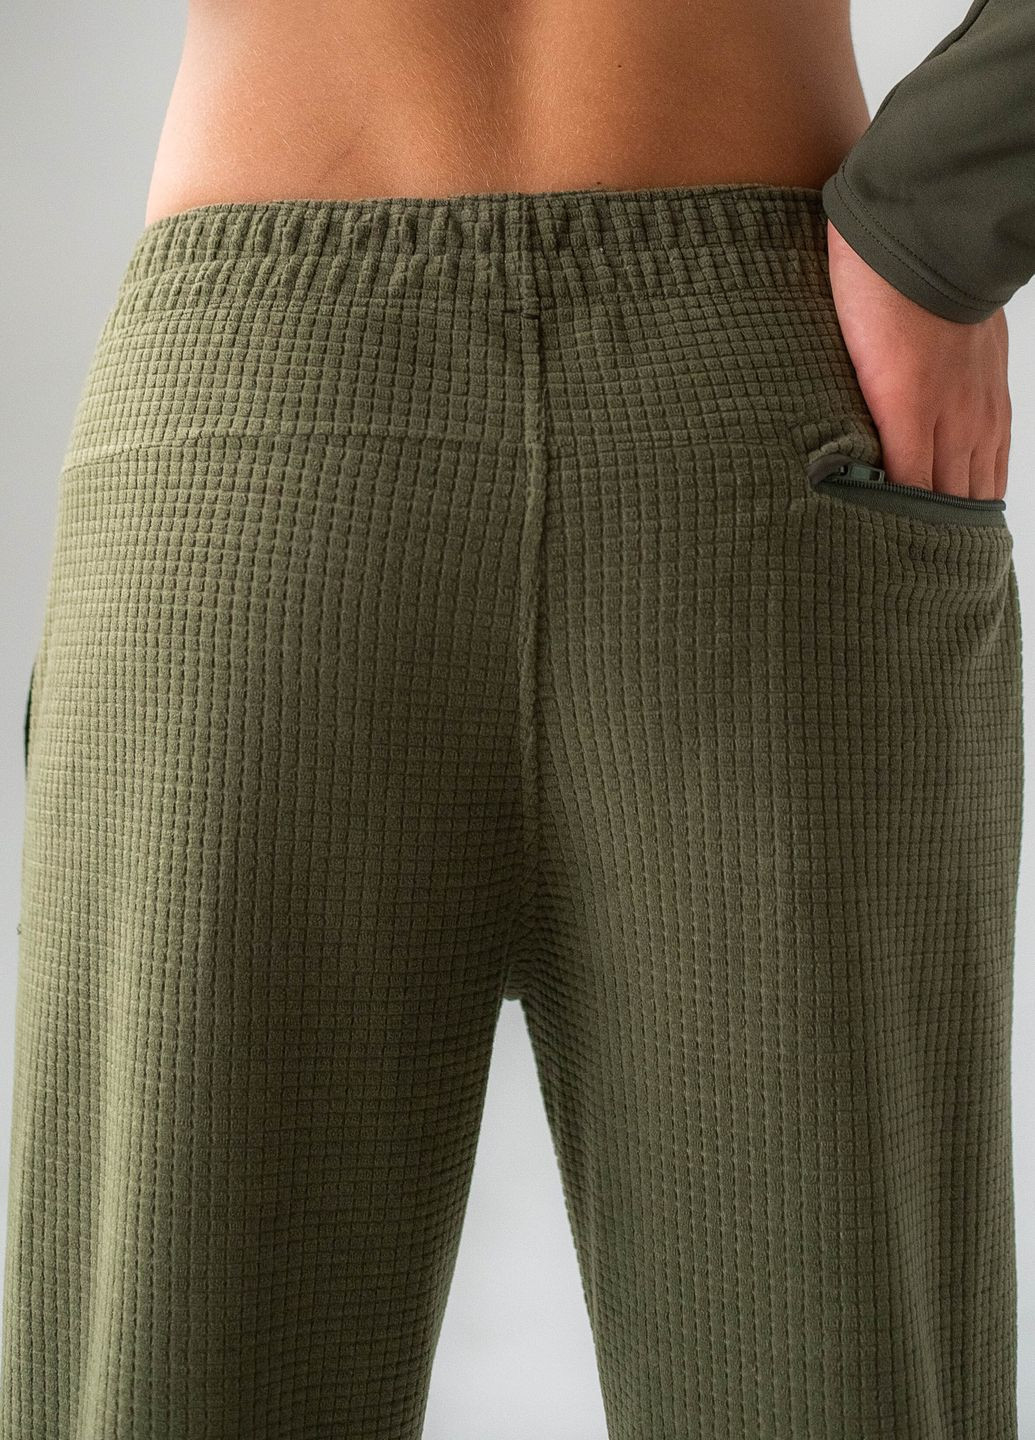 Зеленые повседневный демисезонные брюки GorLin